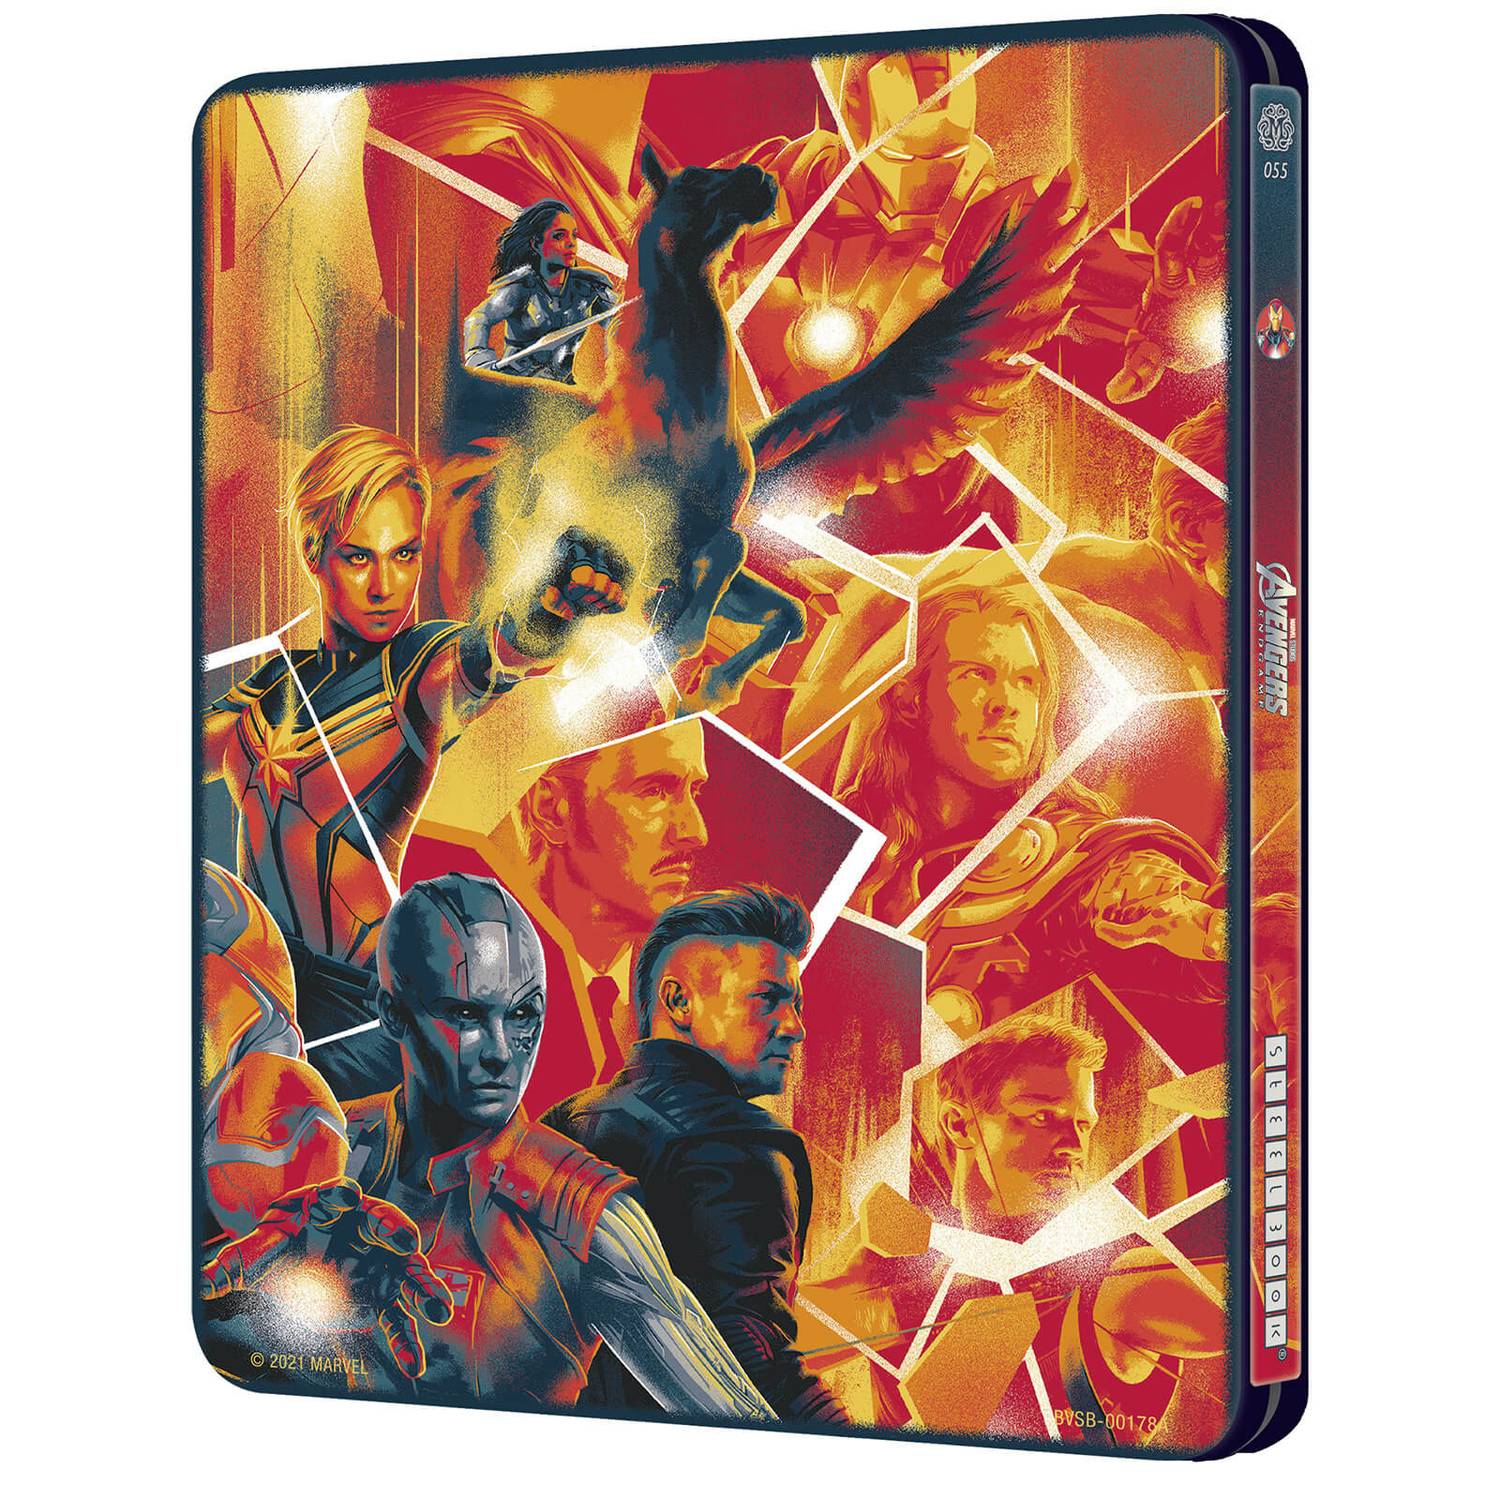 Мстители: Финал (англ. язык) (4K UHD + Blu-ray) Mondo #055 Steelbook